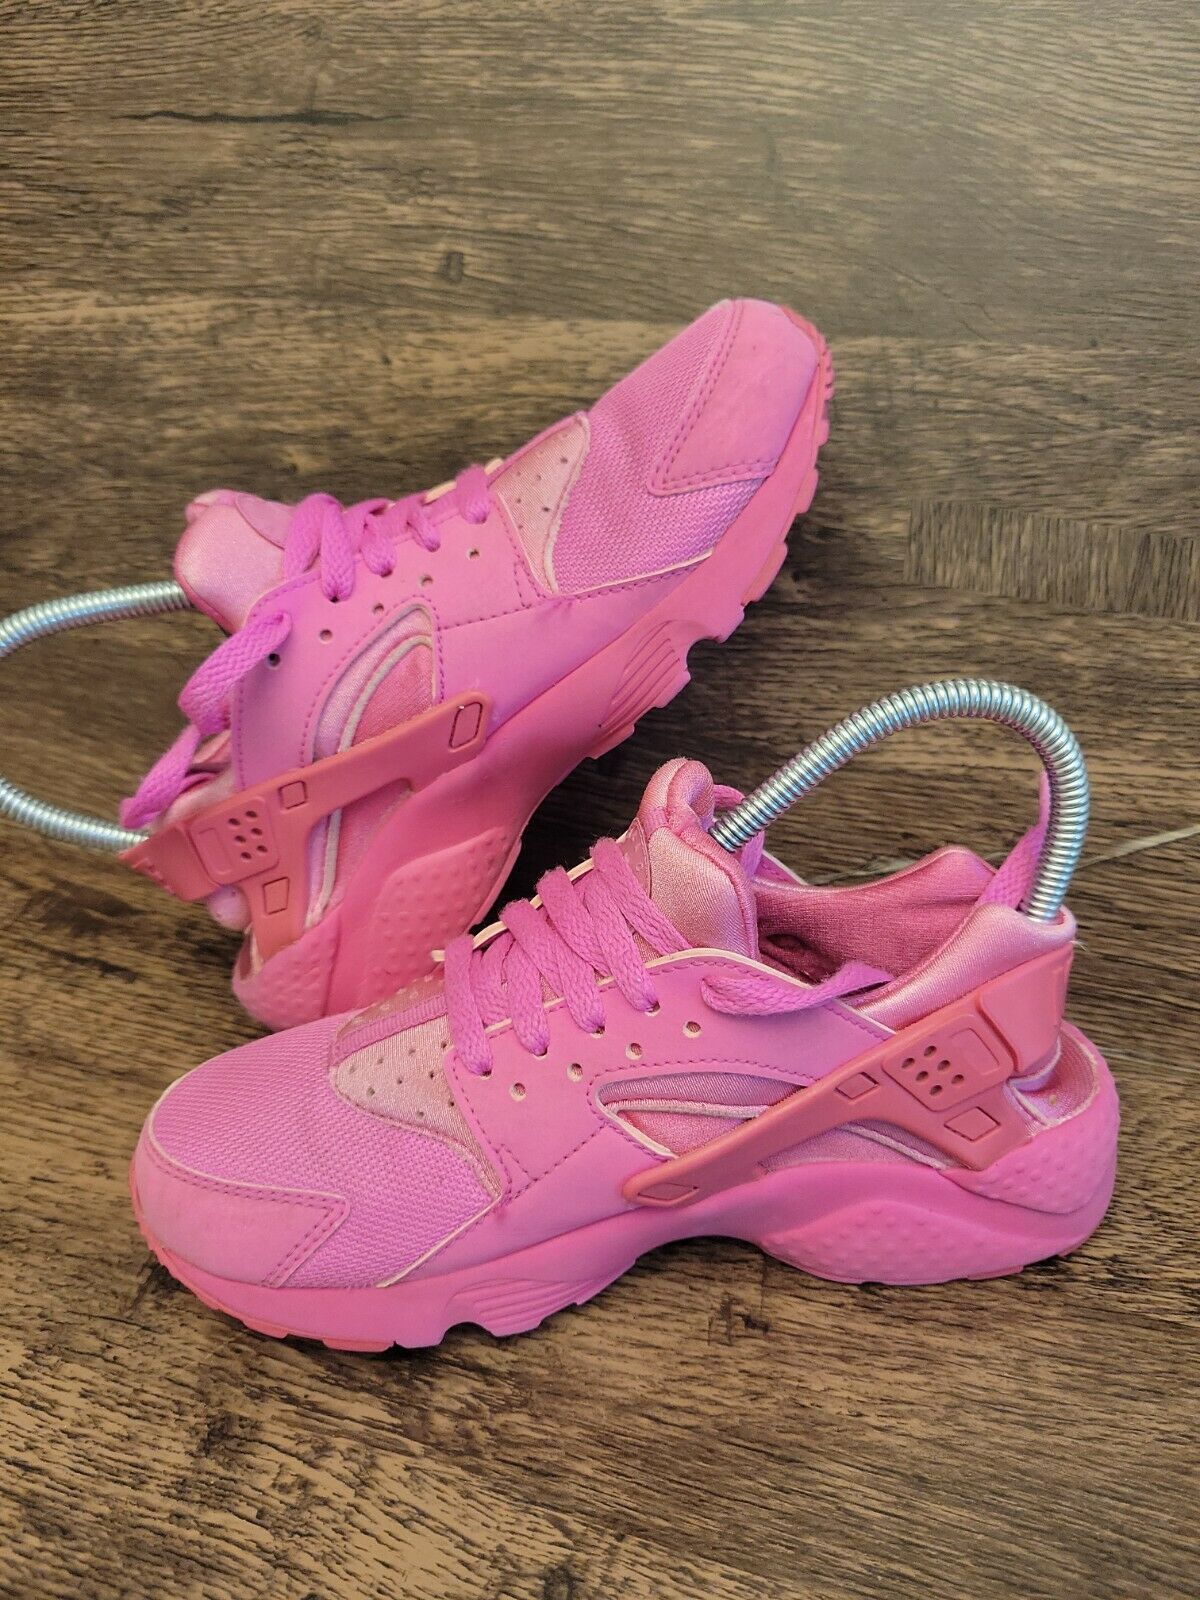 Nike Huarache Run Shoes, Laser Fuchsia - Girls Size 5Y 654275-607